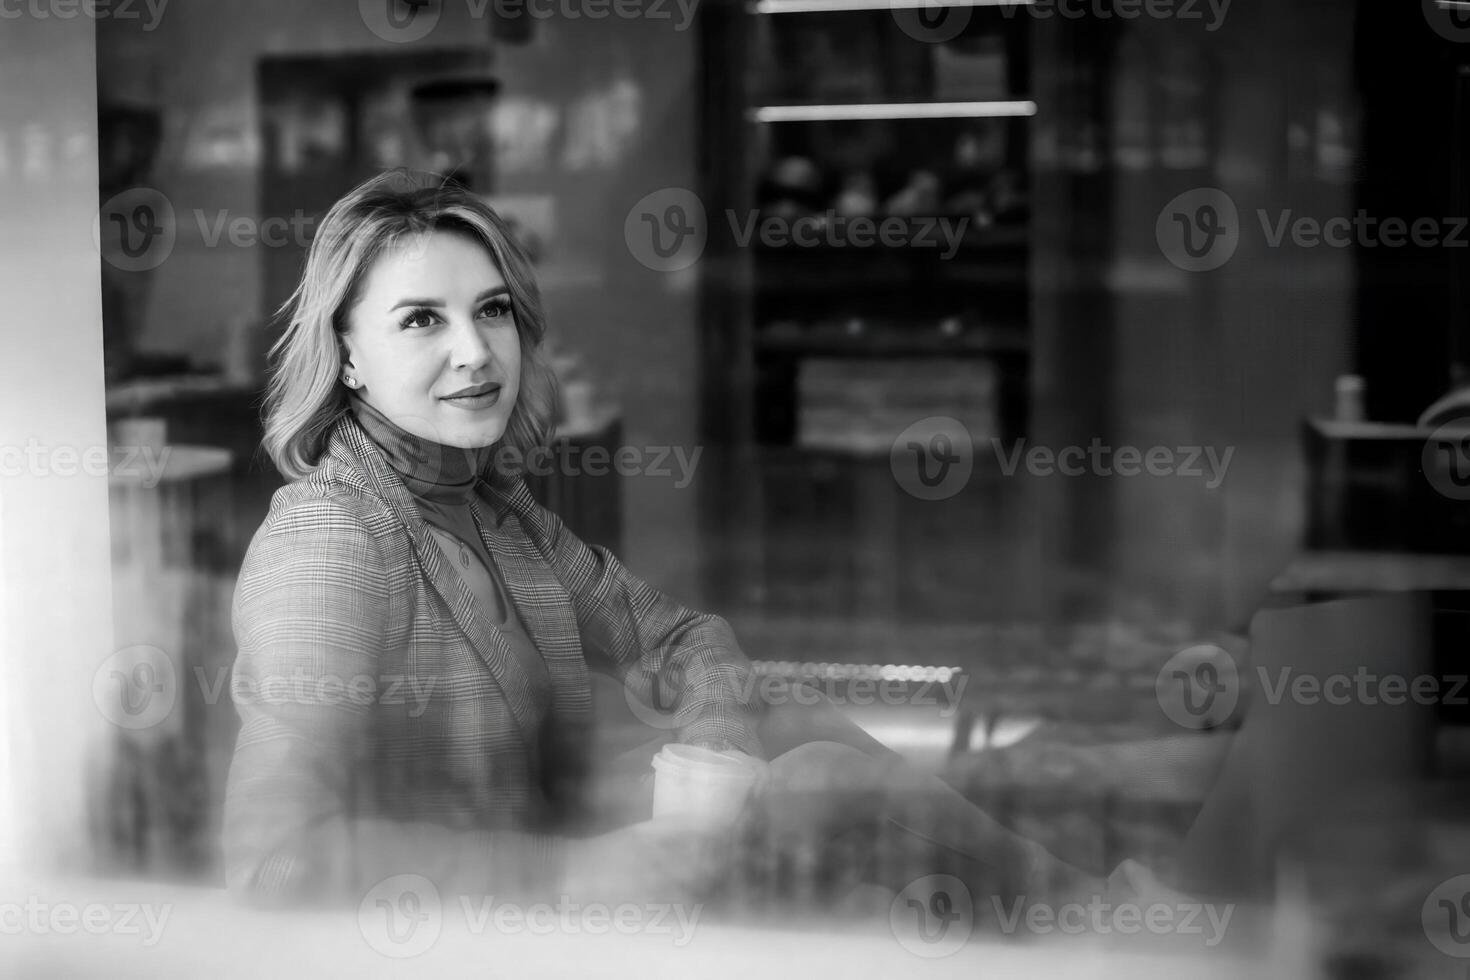 ung kvinna i Kafé med kopp, ung flicka utanför fönster - uppriktig ögonblick i Kafé fångad i svart och vit - kontrast av inomhus- och utomhus- inställningar i Kafé scen. foto